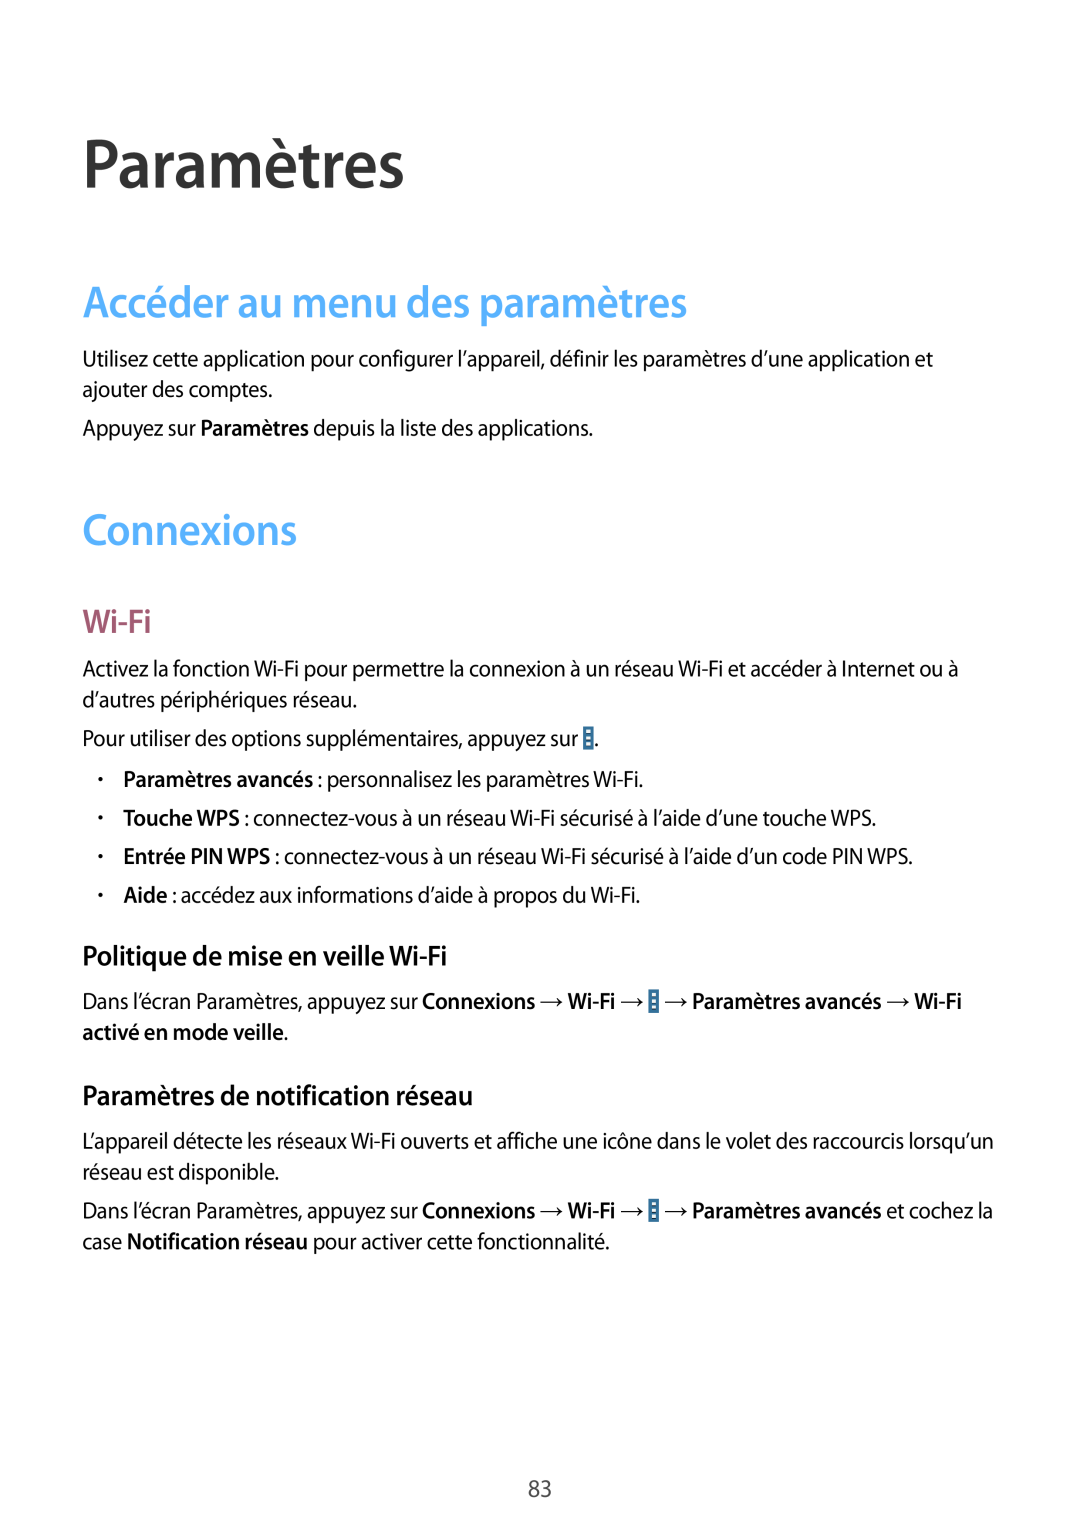 Samsung SM-T533NZWAXEF manual Paramètres, Accéder au menu des paramètres, Connexions, Politique de mise en veille Wi-Fi 